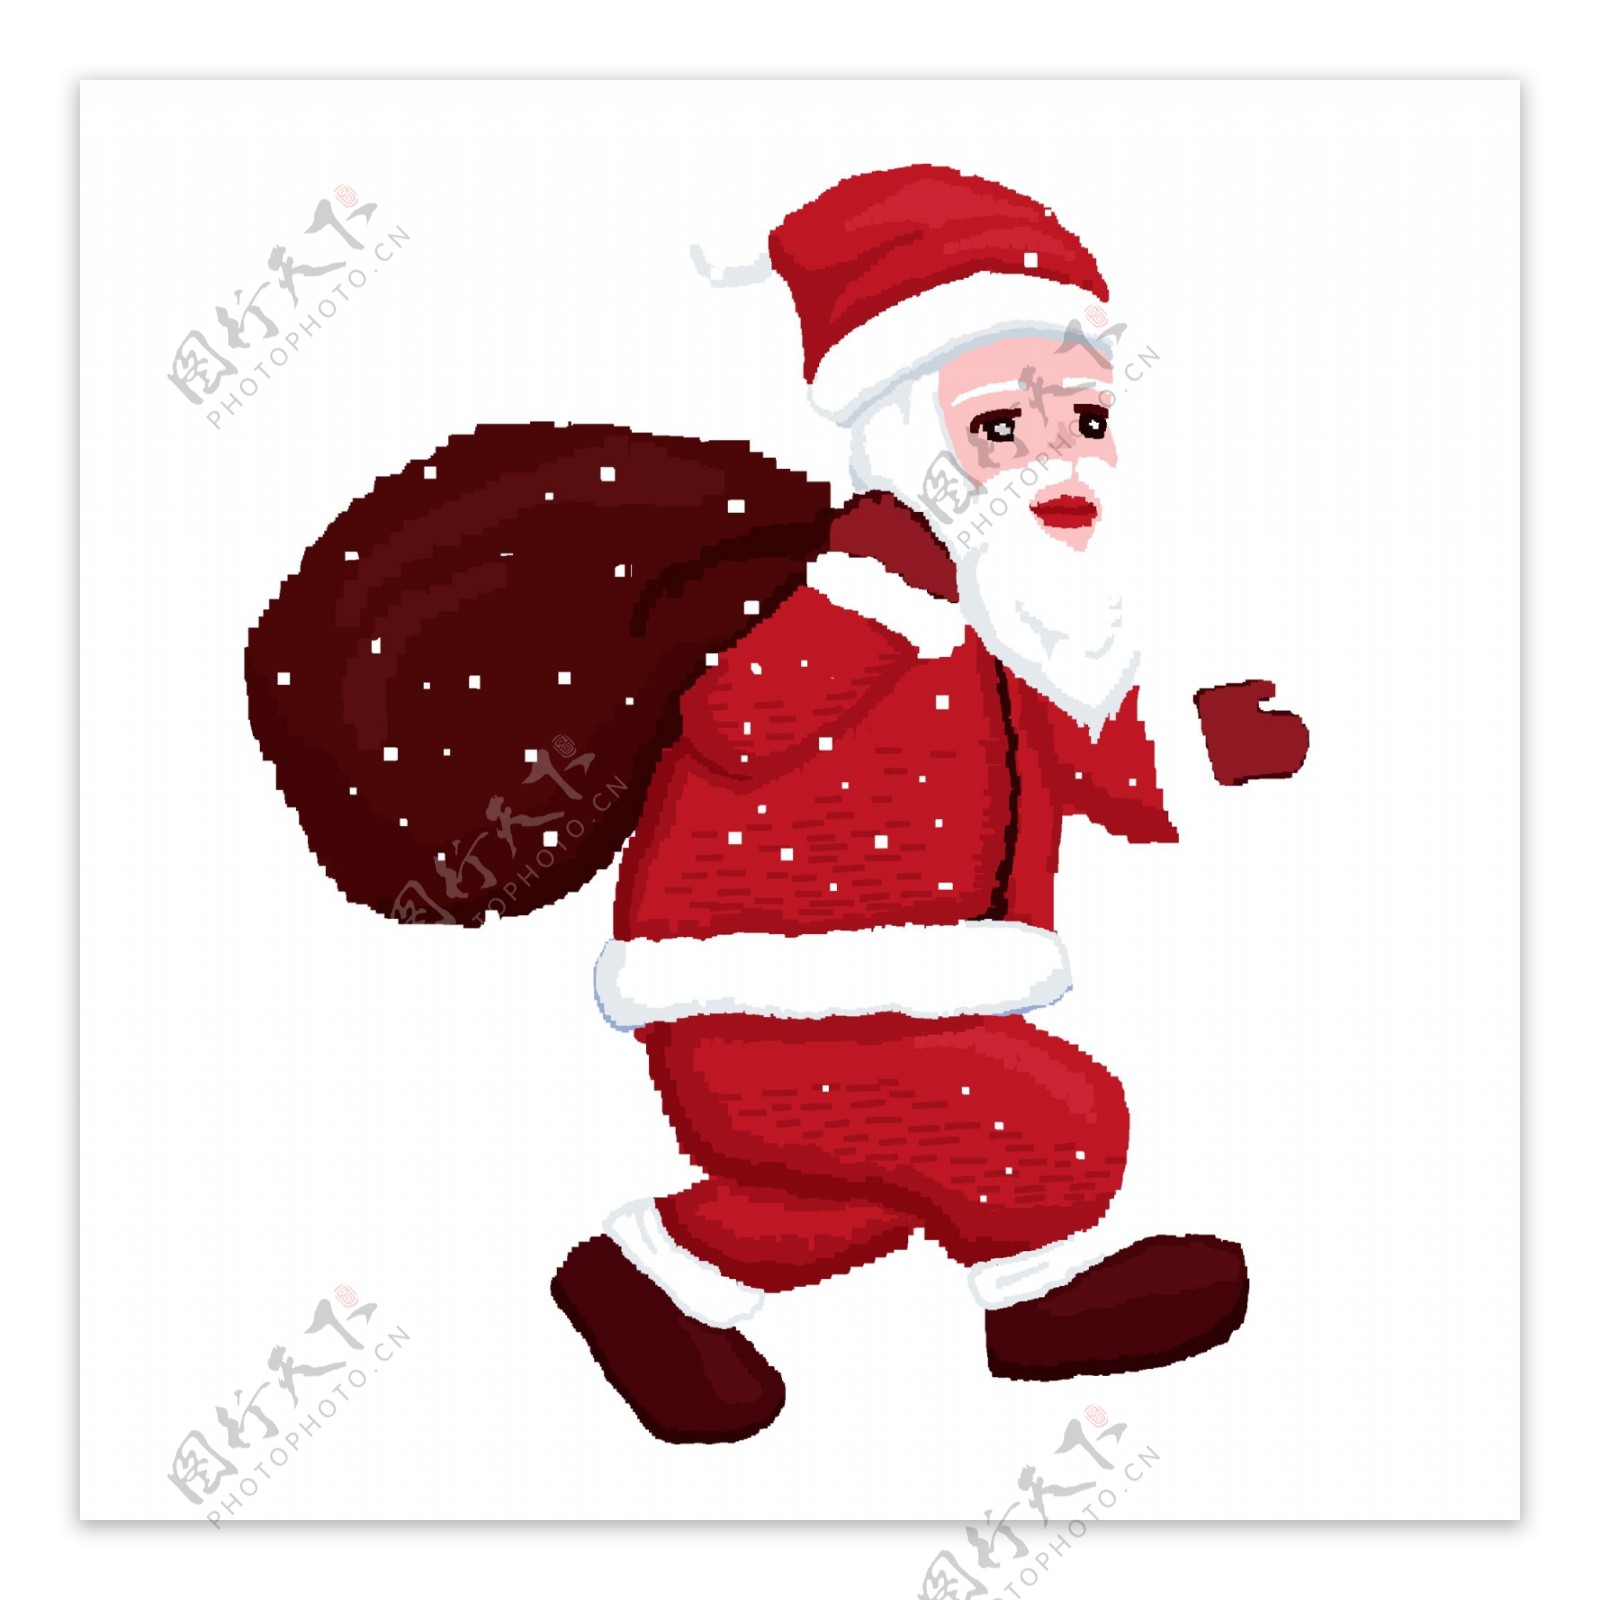 背着麻袋的圣诞老人像素化设计可商用元素